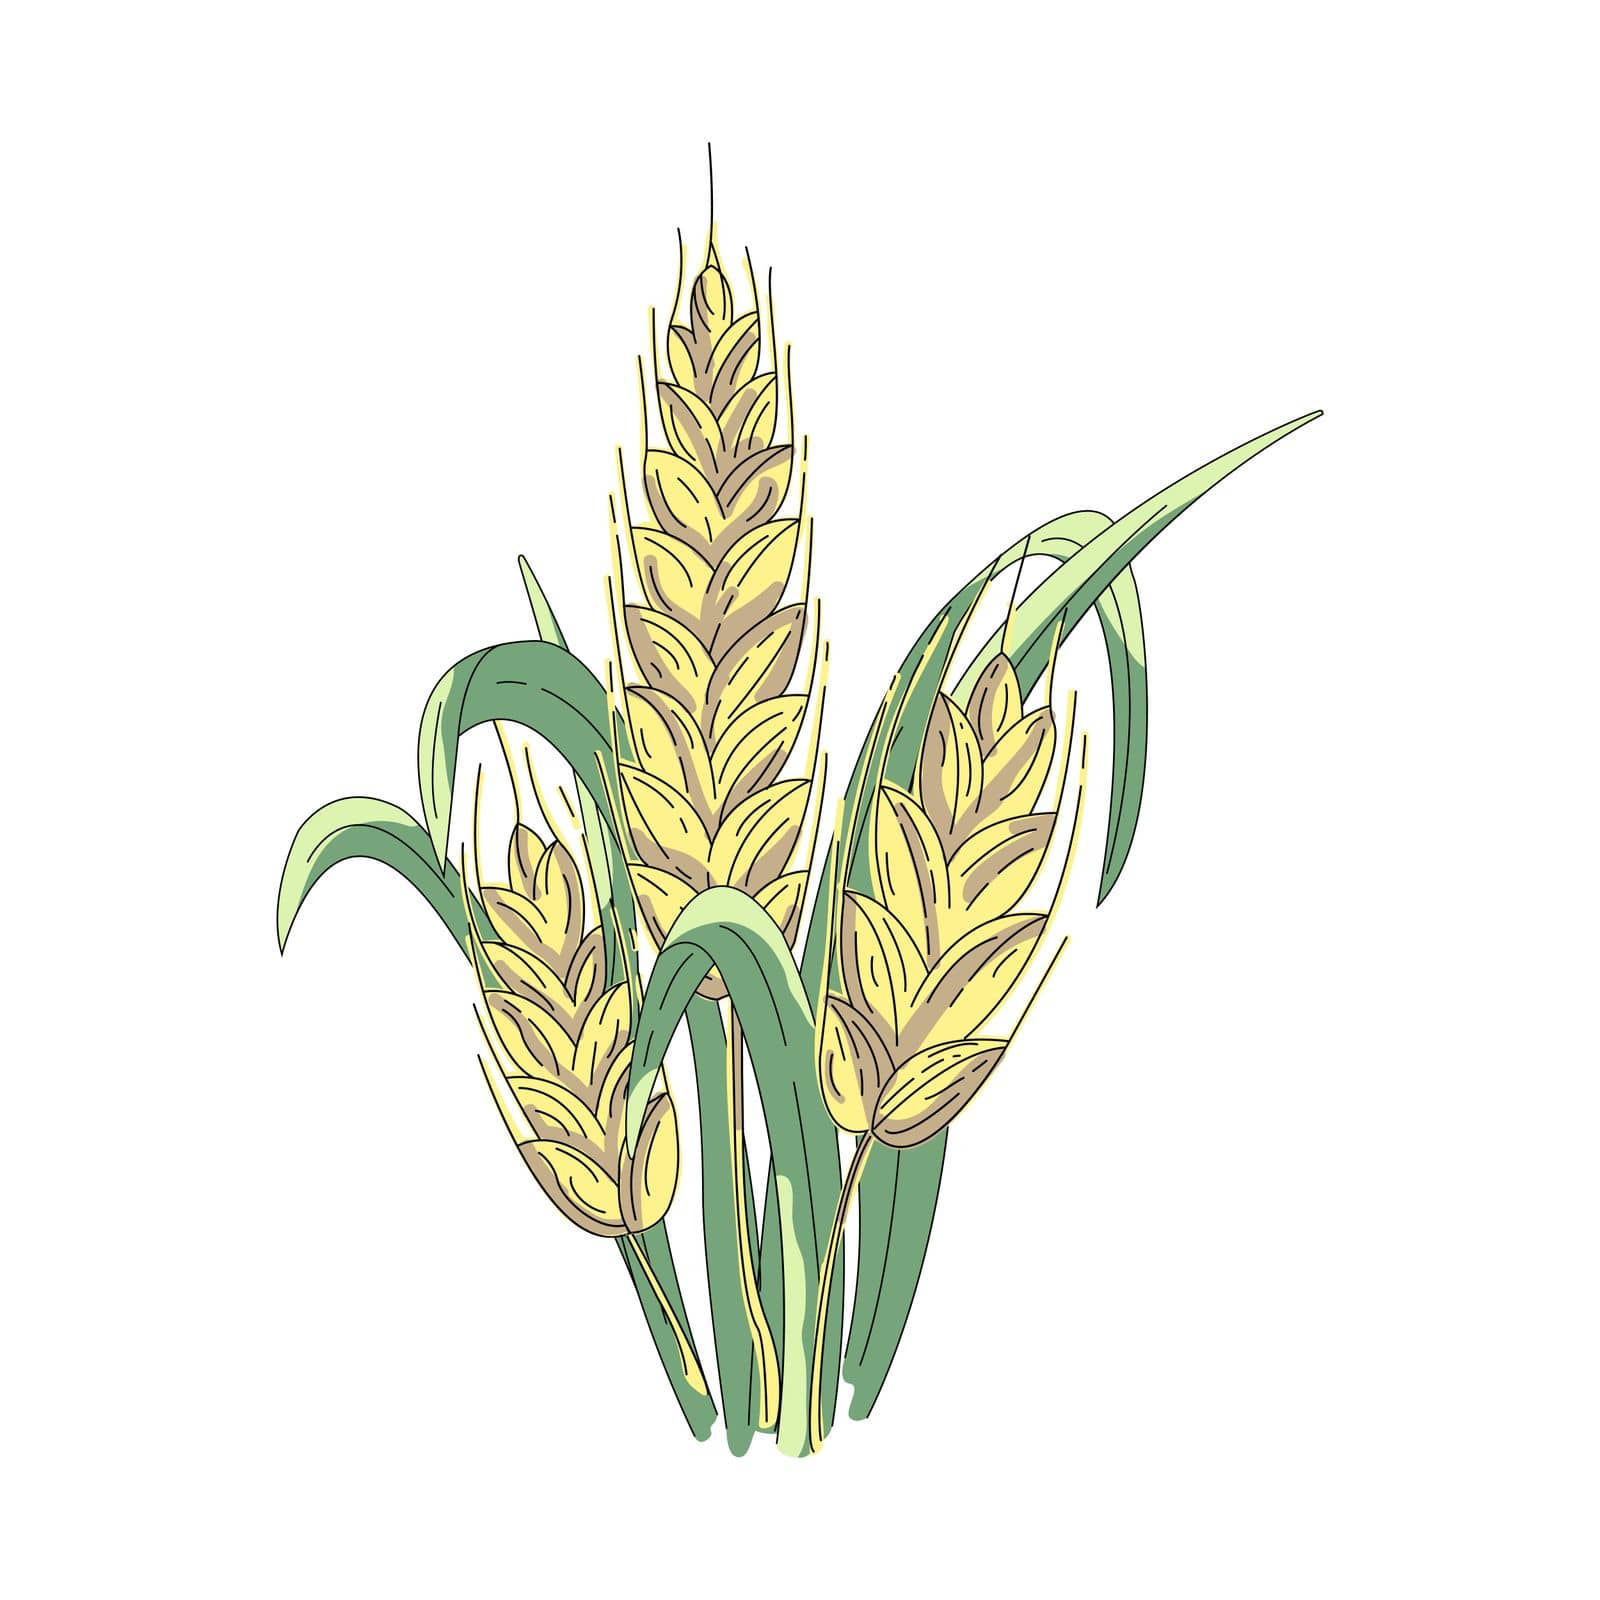 Ears of wheat by KatyaBahr